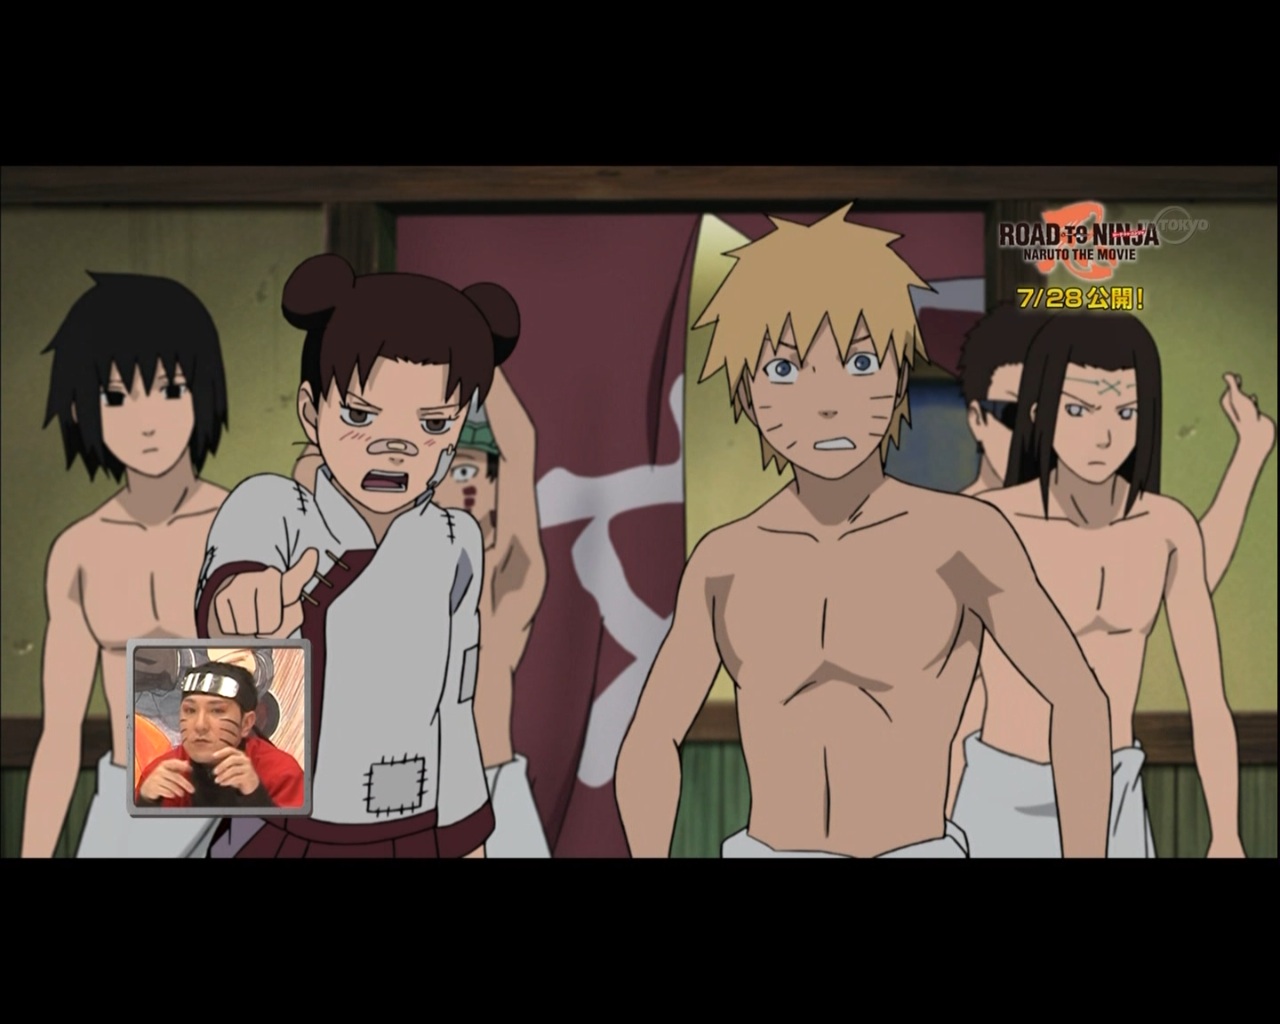 Um especial sobre o novo filme de Naruto, "Naruto The Movie: Road to N...